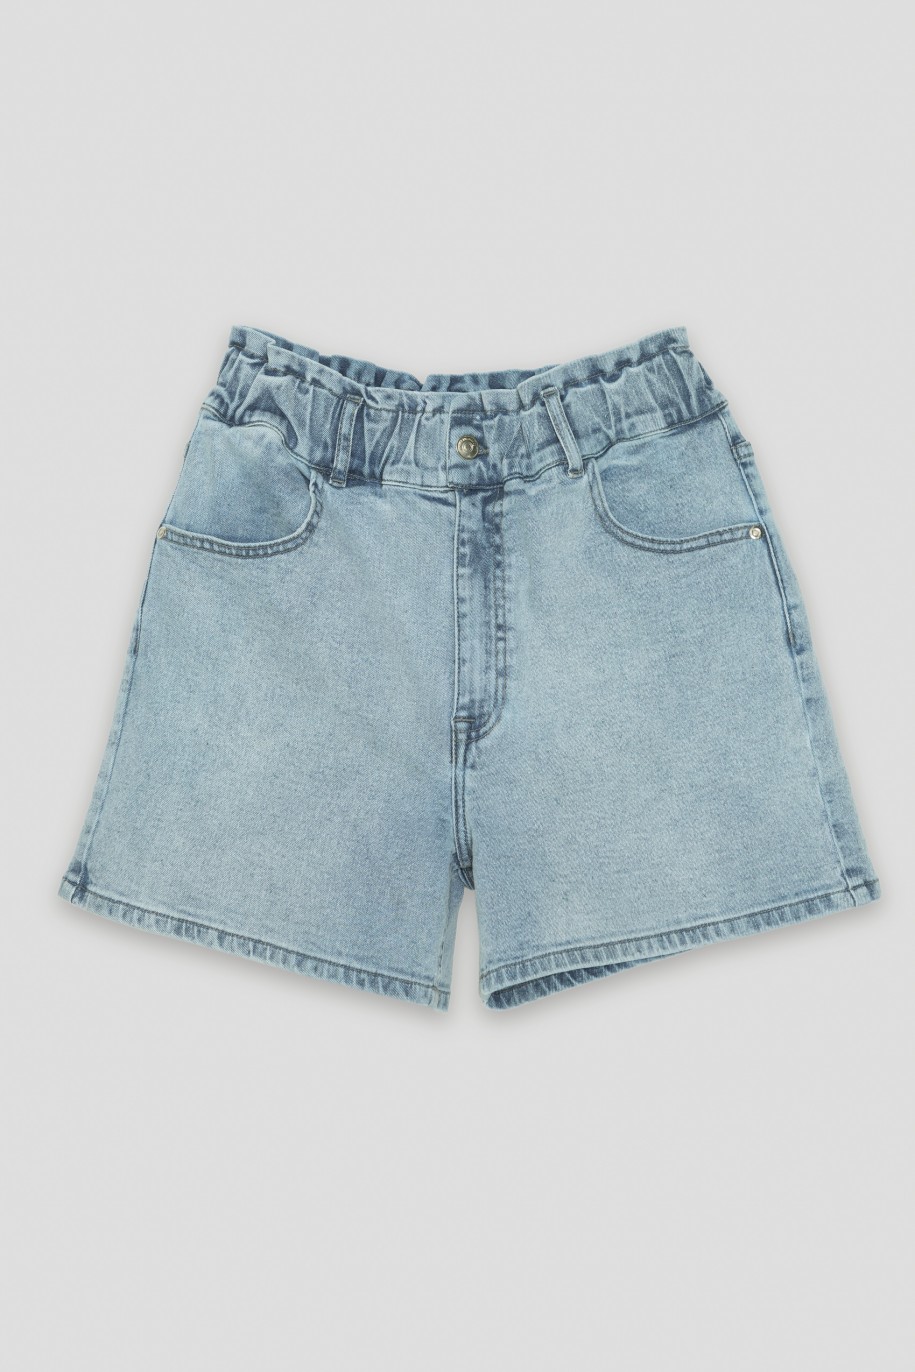 Niebieskie jeansowe krótkie spodenki - 41556